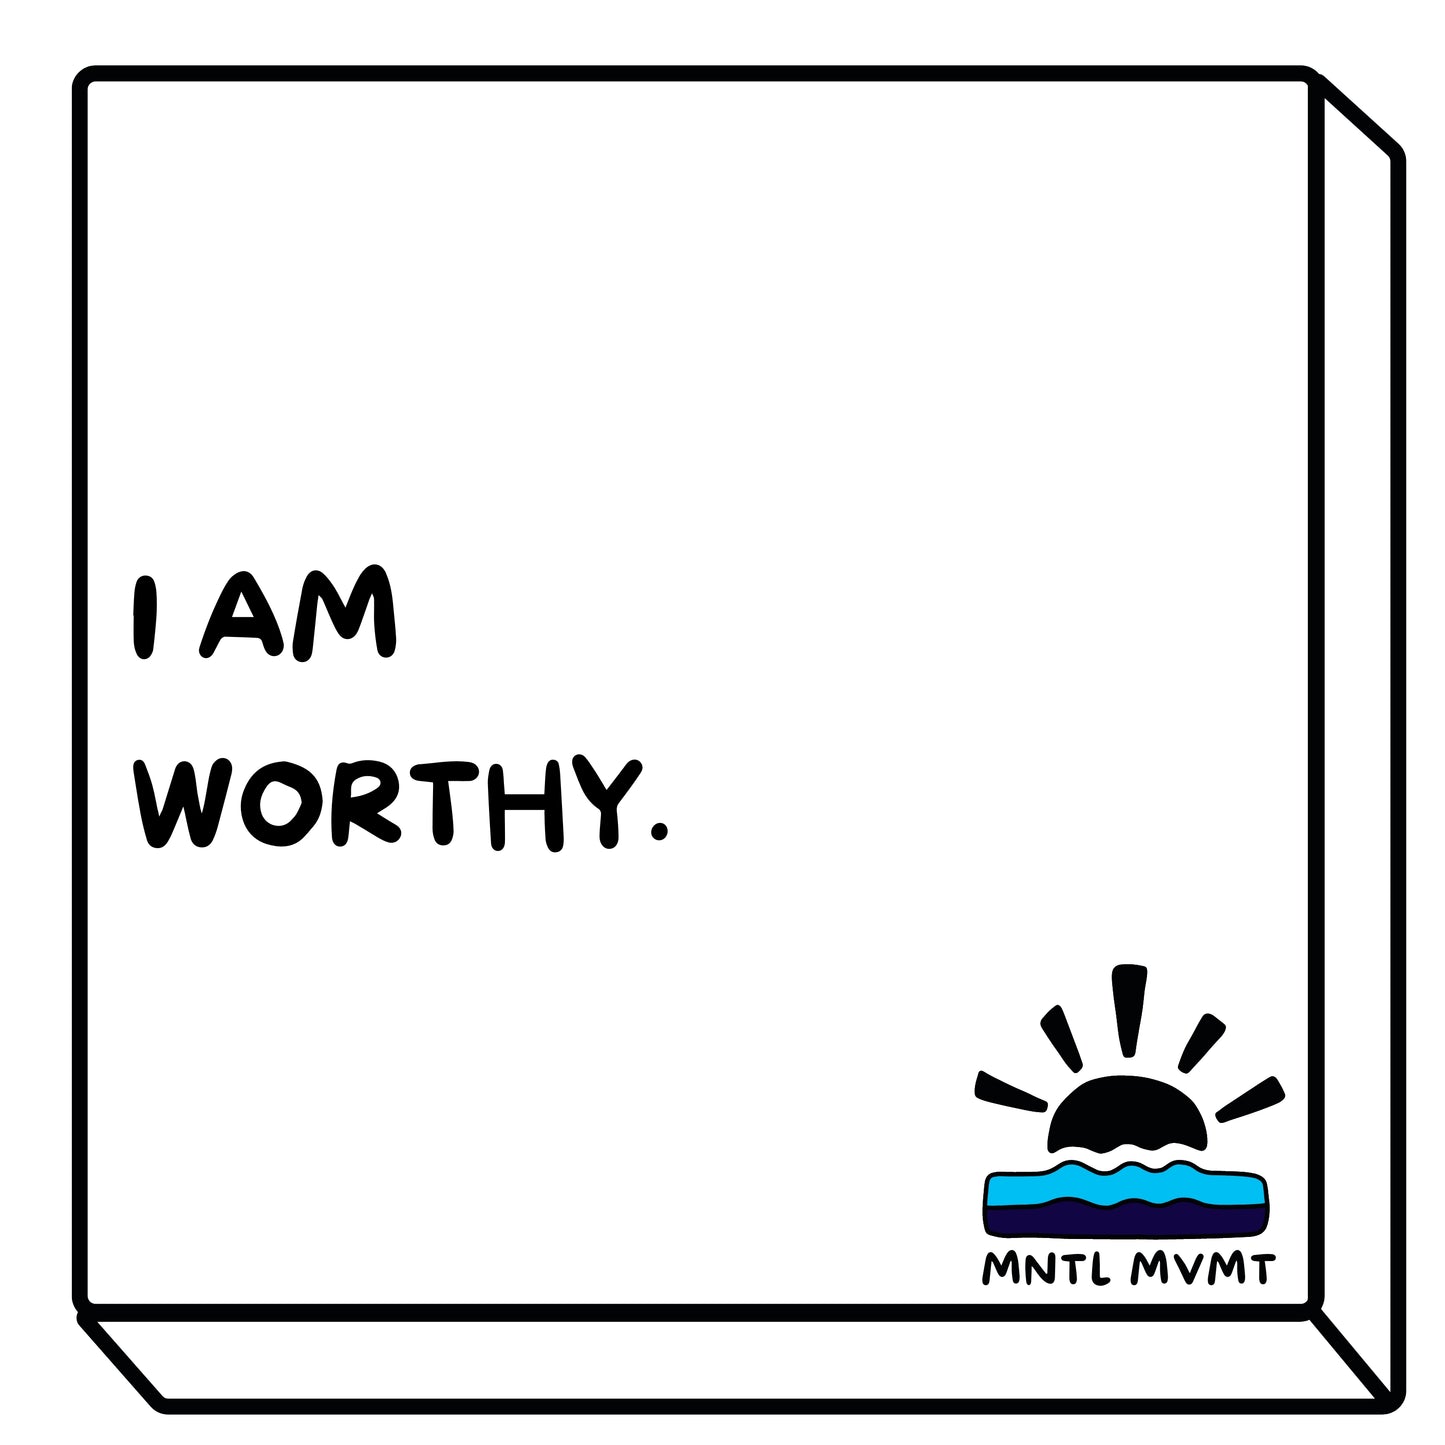 I AM WORTHY.